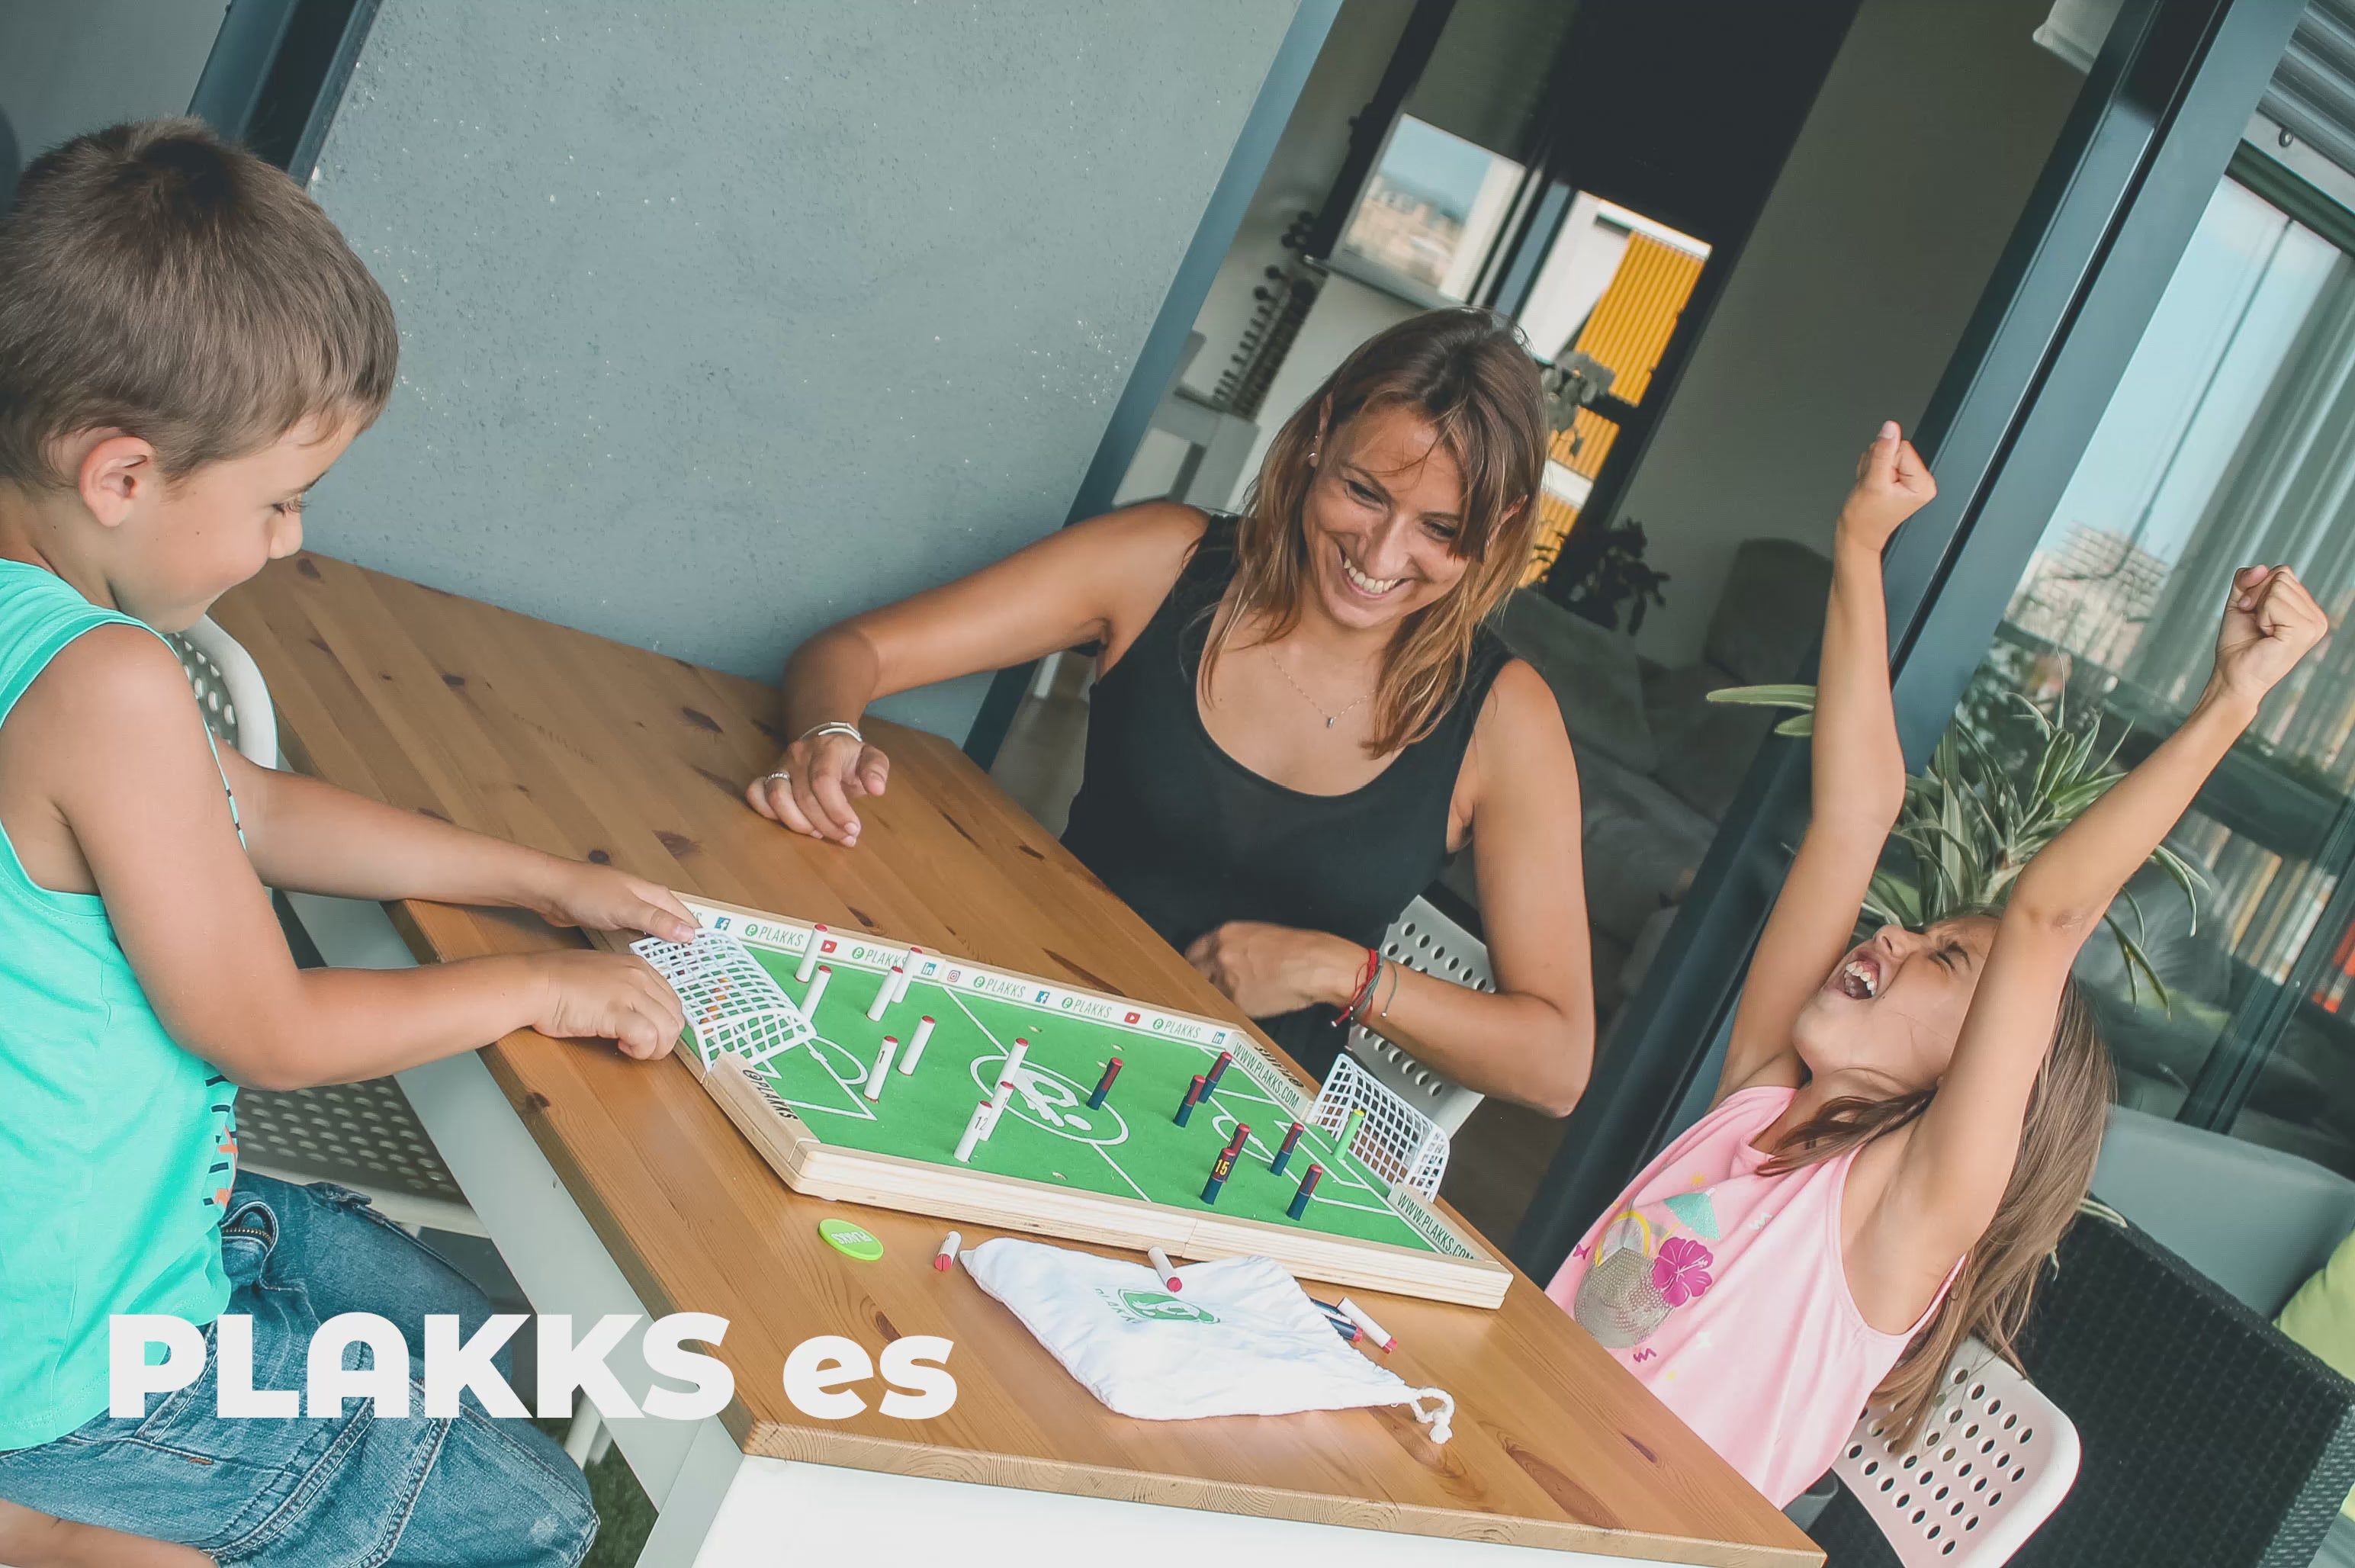 Load video: Plakks es familia, aprender, concentración, celebración, respeto